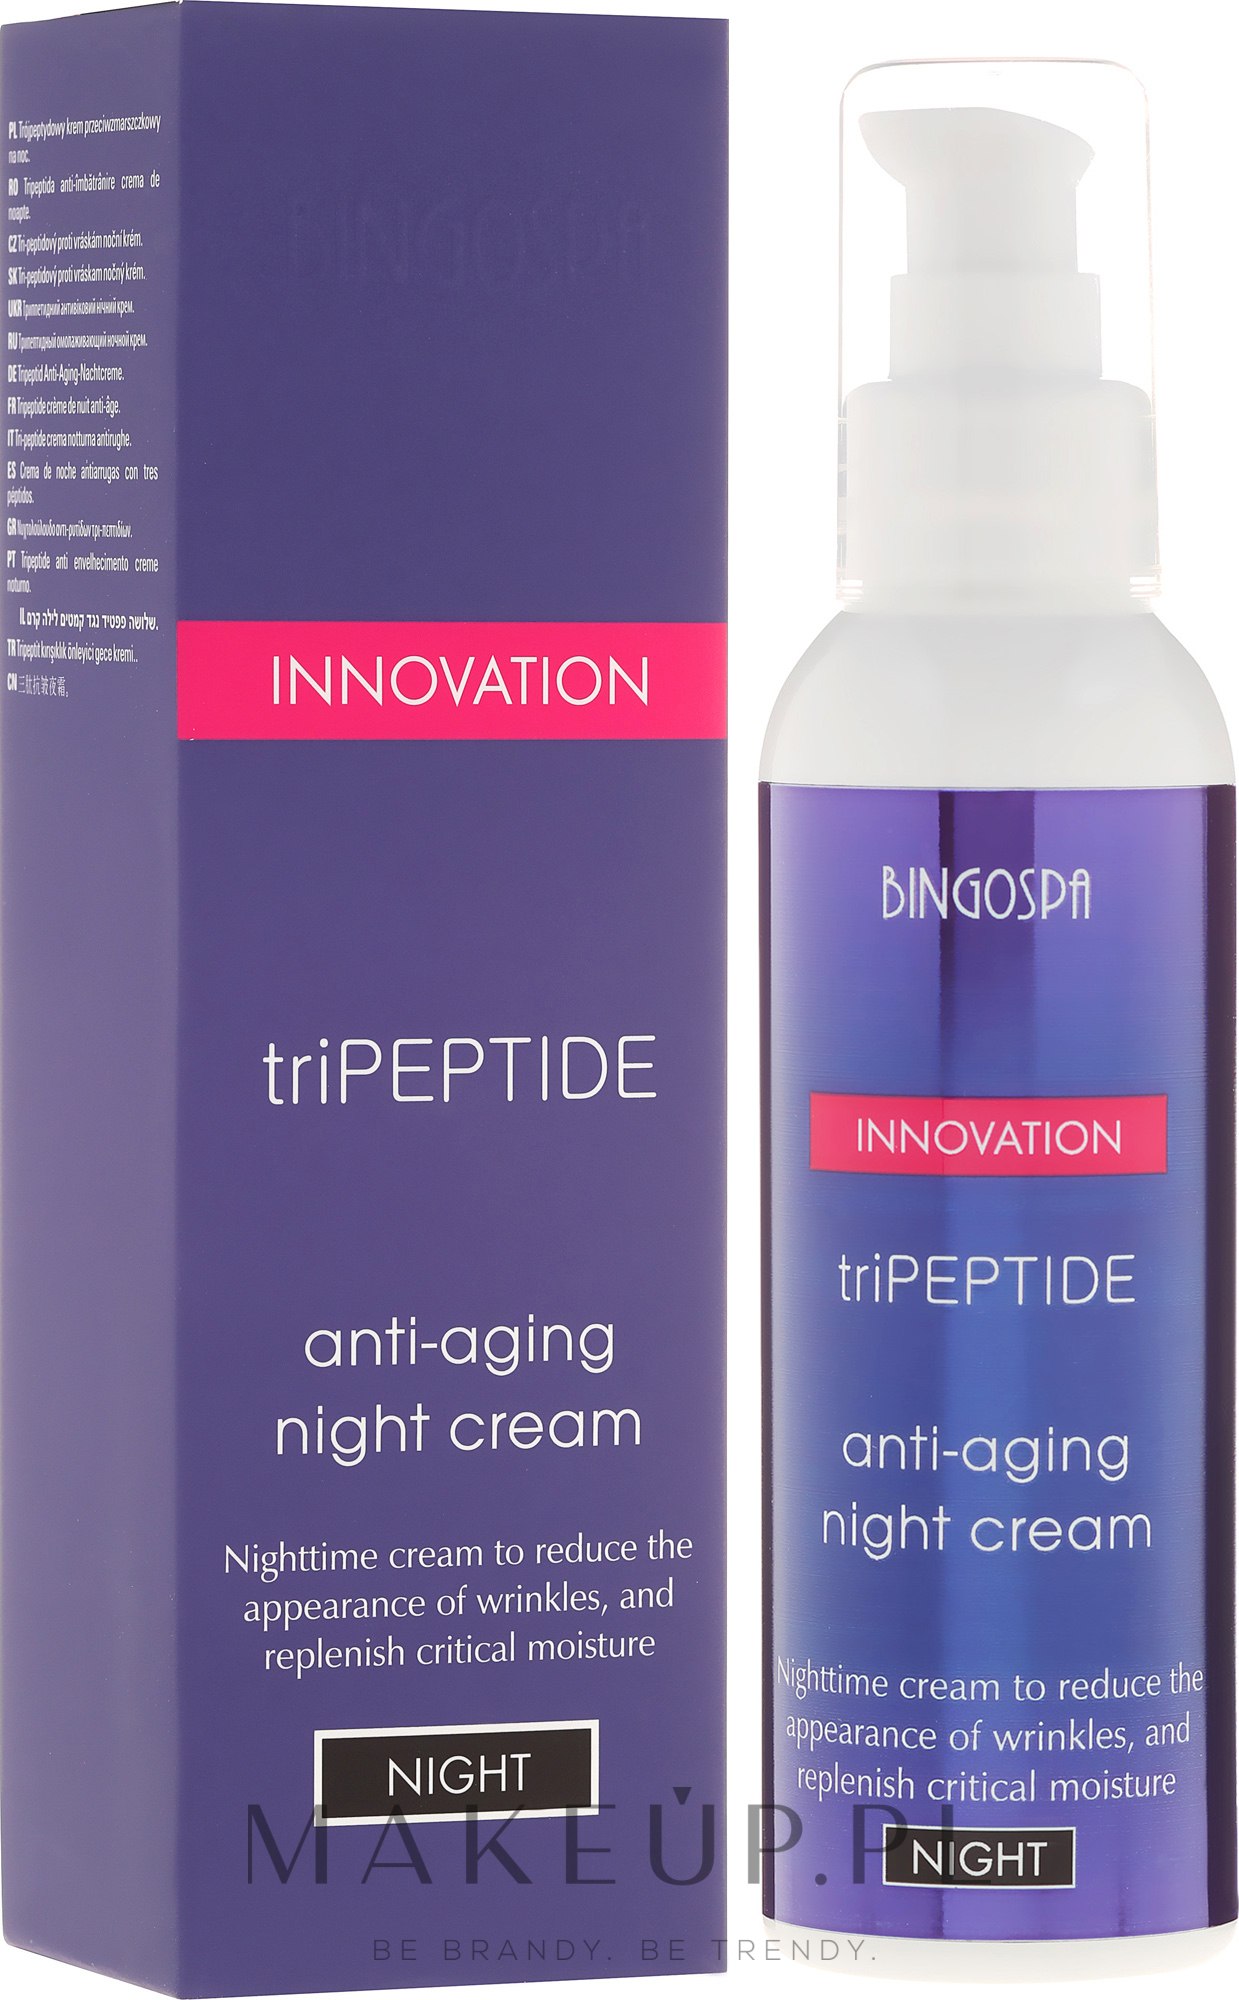 Przeciwstarzeniowy krem peptydowy do walki ze zmarszczkami na noc - BingoSpa Innovation TriPeptide Anti-Aging Night Cream — Zdjęcie 135 g